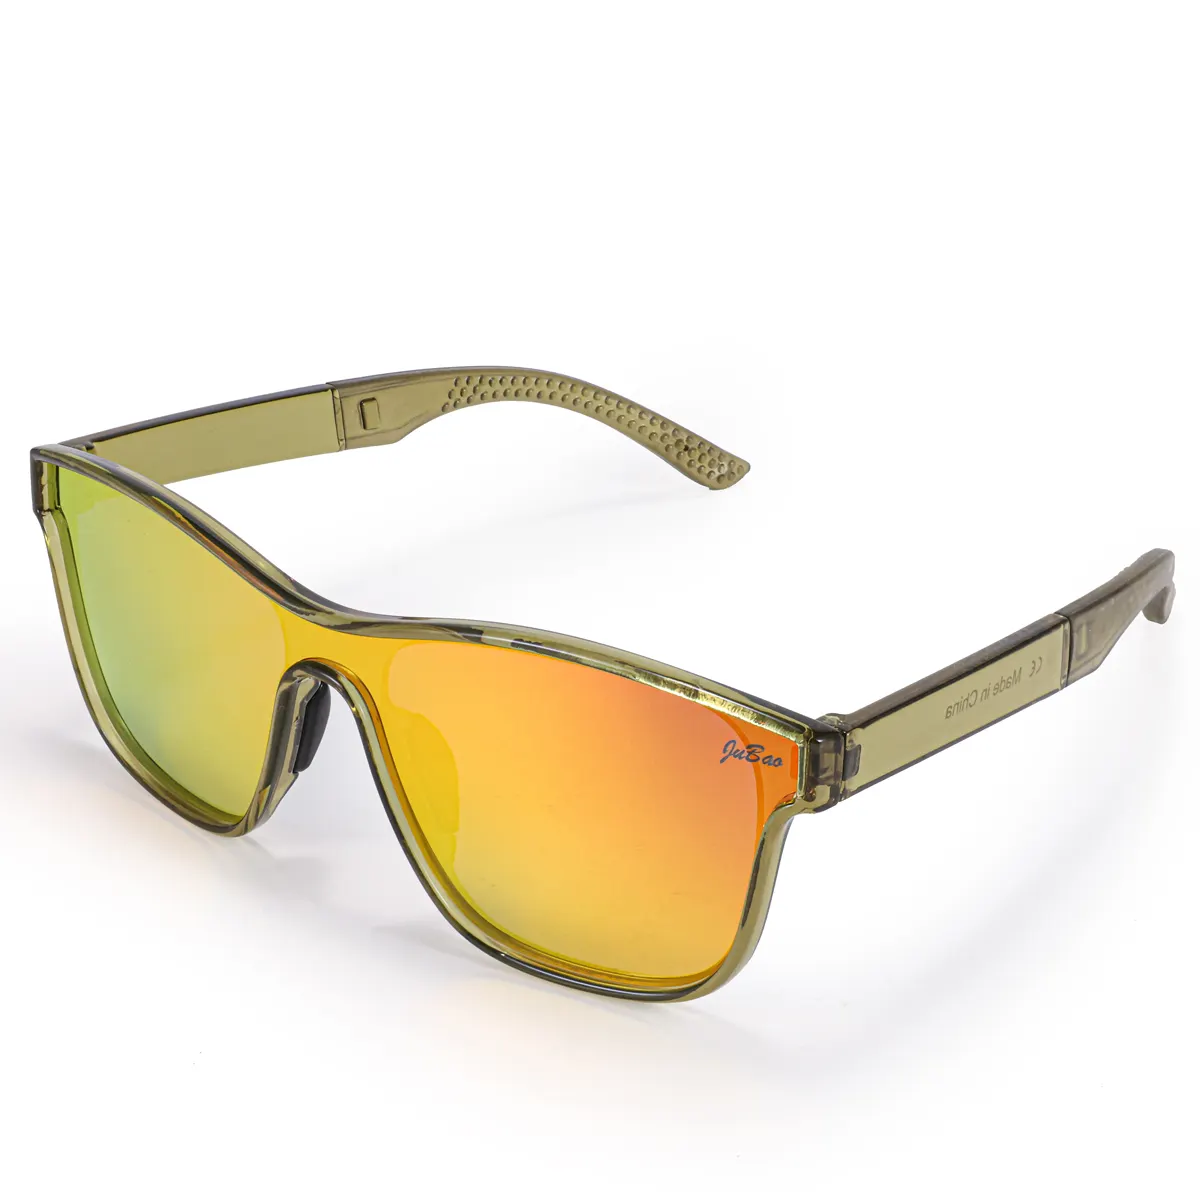 Óculos de sol esportivos polarizados HUBO 508 UV400 para caminhadas, corrida, pesca, condução, bicicleta de estrada, óculos rockbros para homens e mulheres